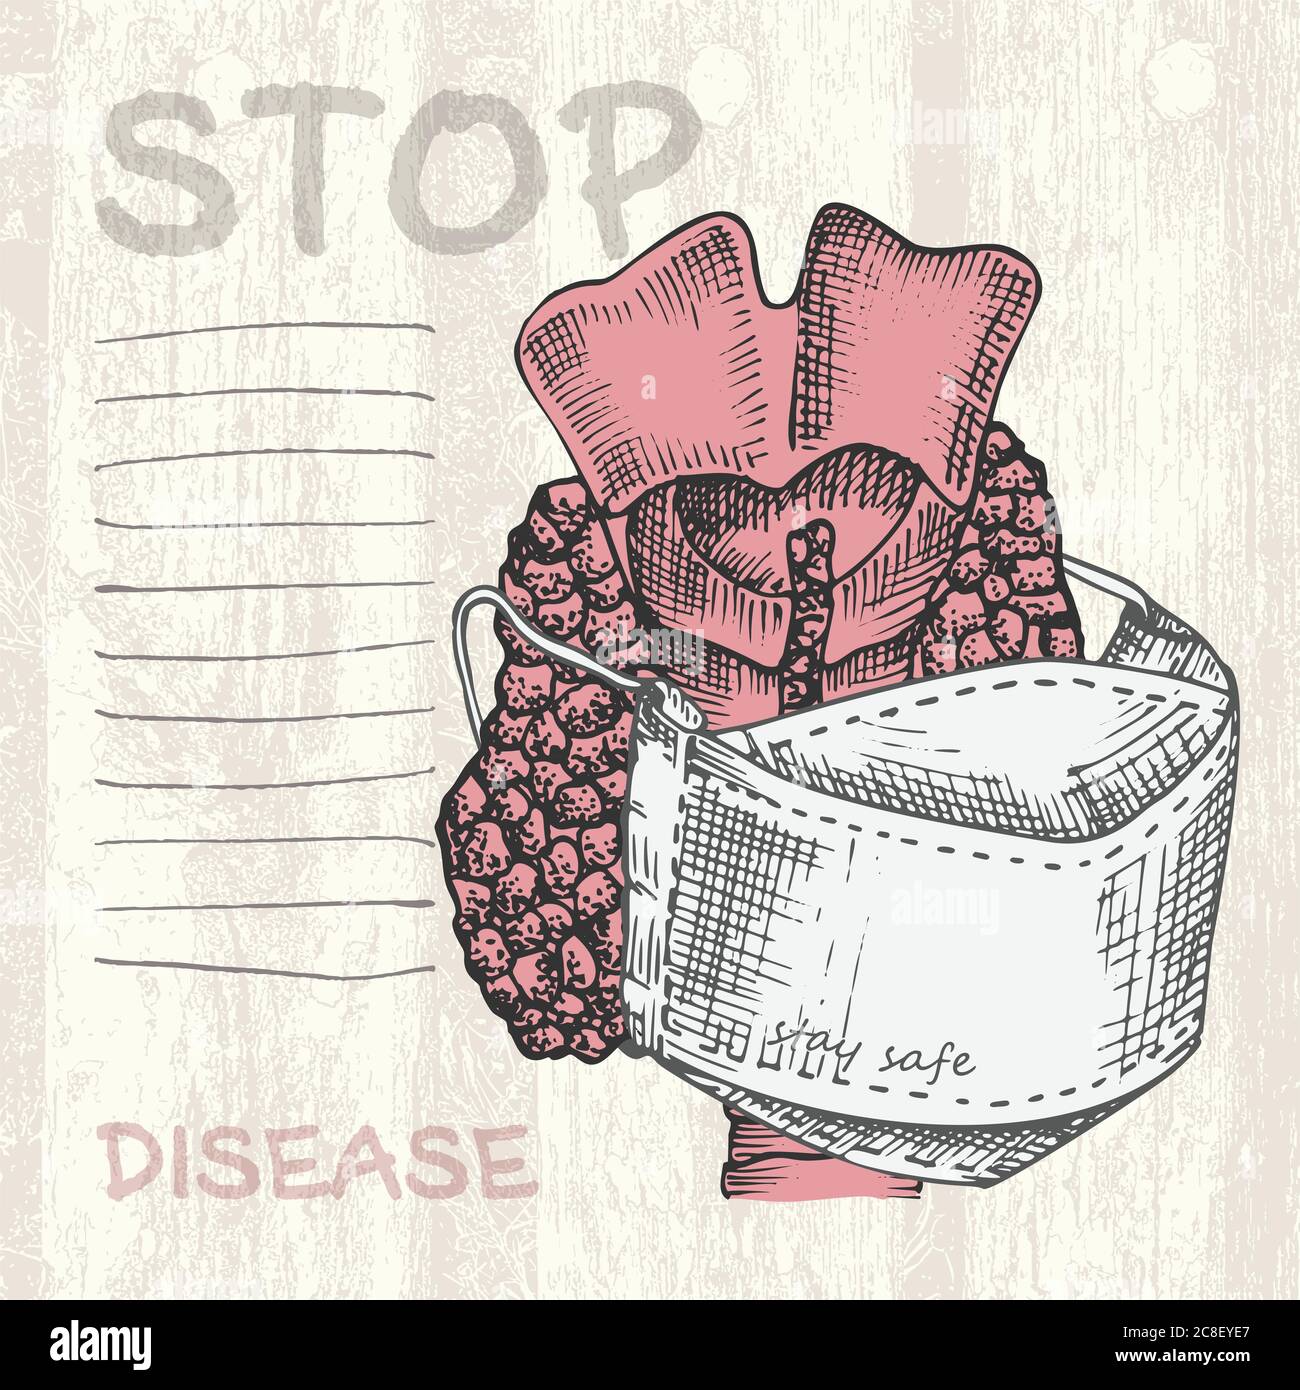 Handgezeichnete Schilddrüse mit medizinischer Maske Tagebuch-Seite menschliche innere Organe Skizzenstil Design für medizinisches Projekt Poster Pathologie Krankheit Stock Vektor